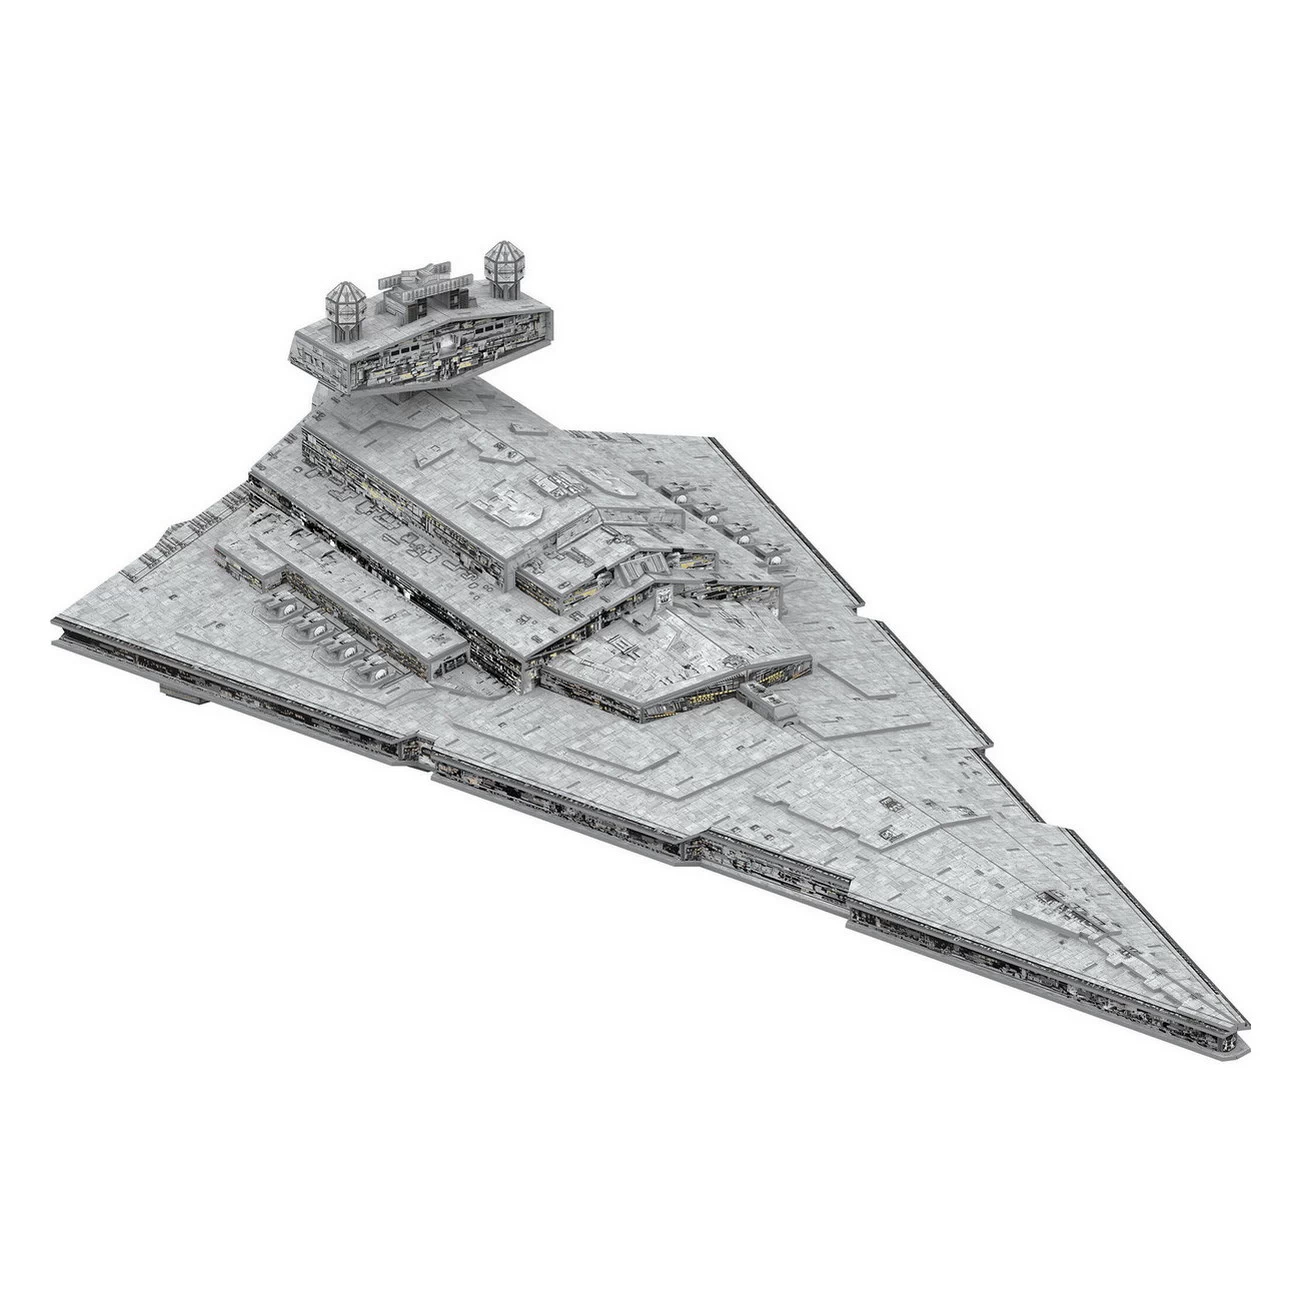 Revell 00326 - Star Wars Imperialer Sternerzerstörer - 3D Puzzle